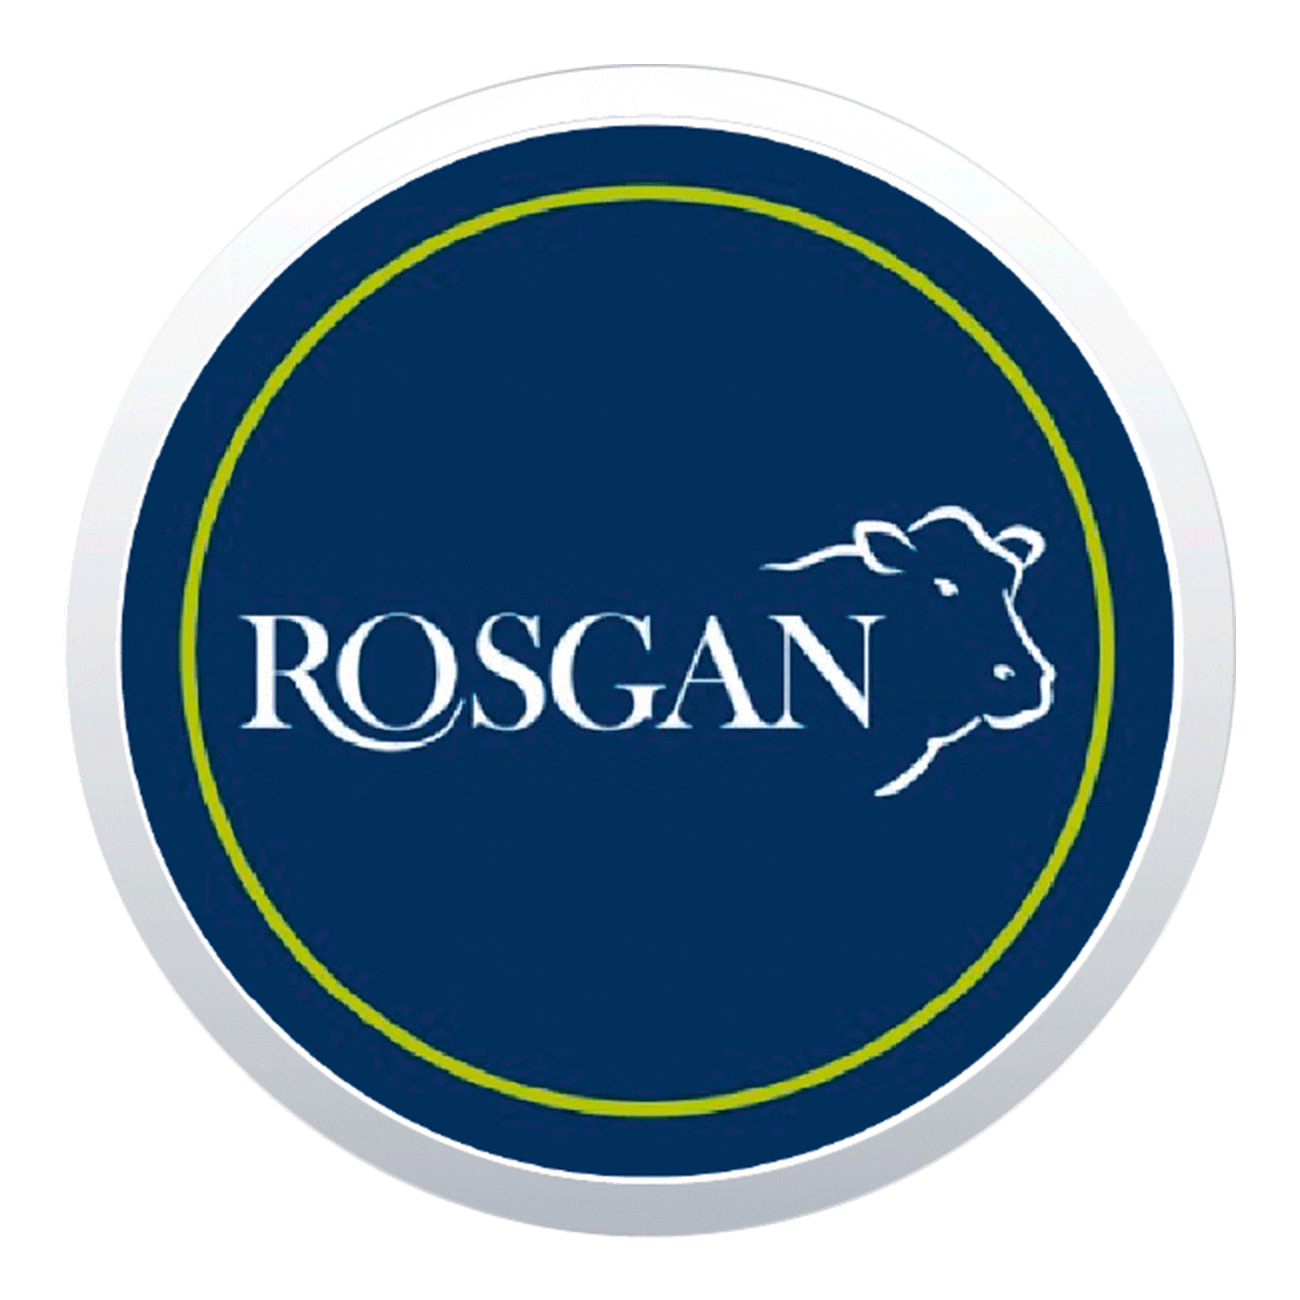 Rosgan